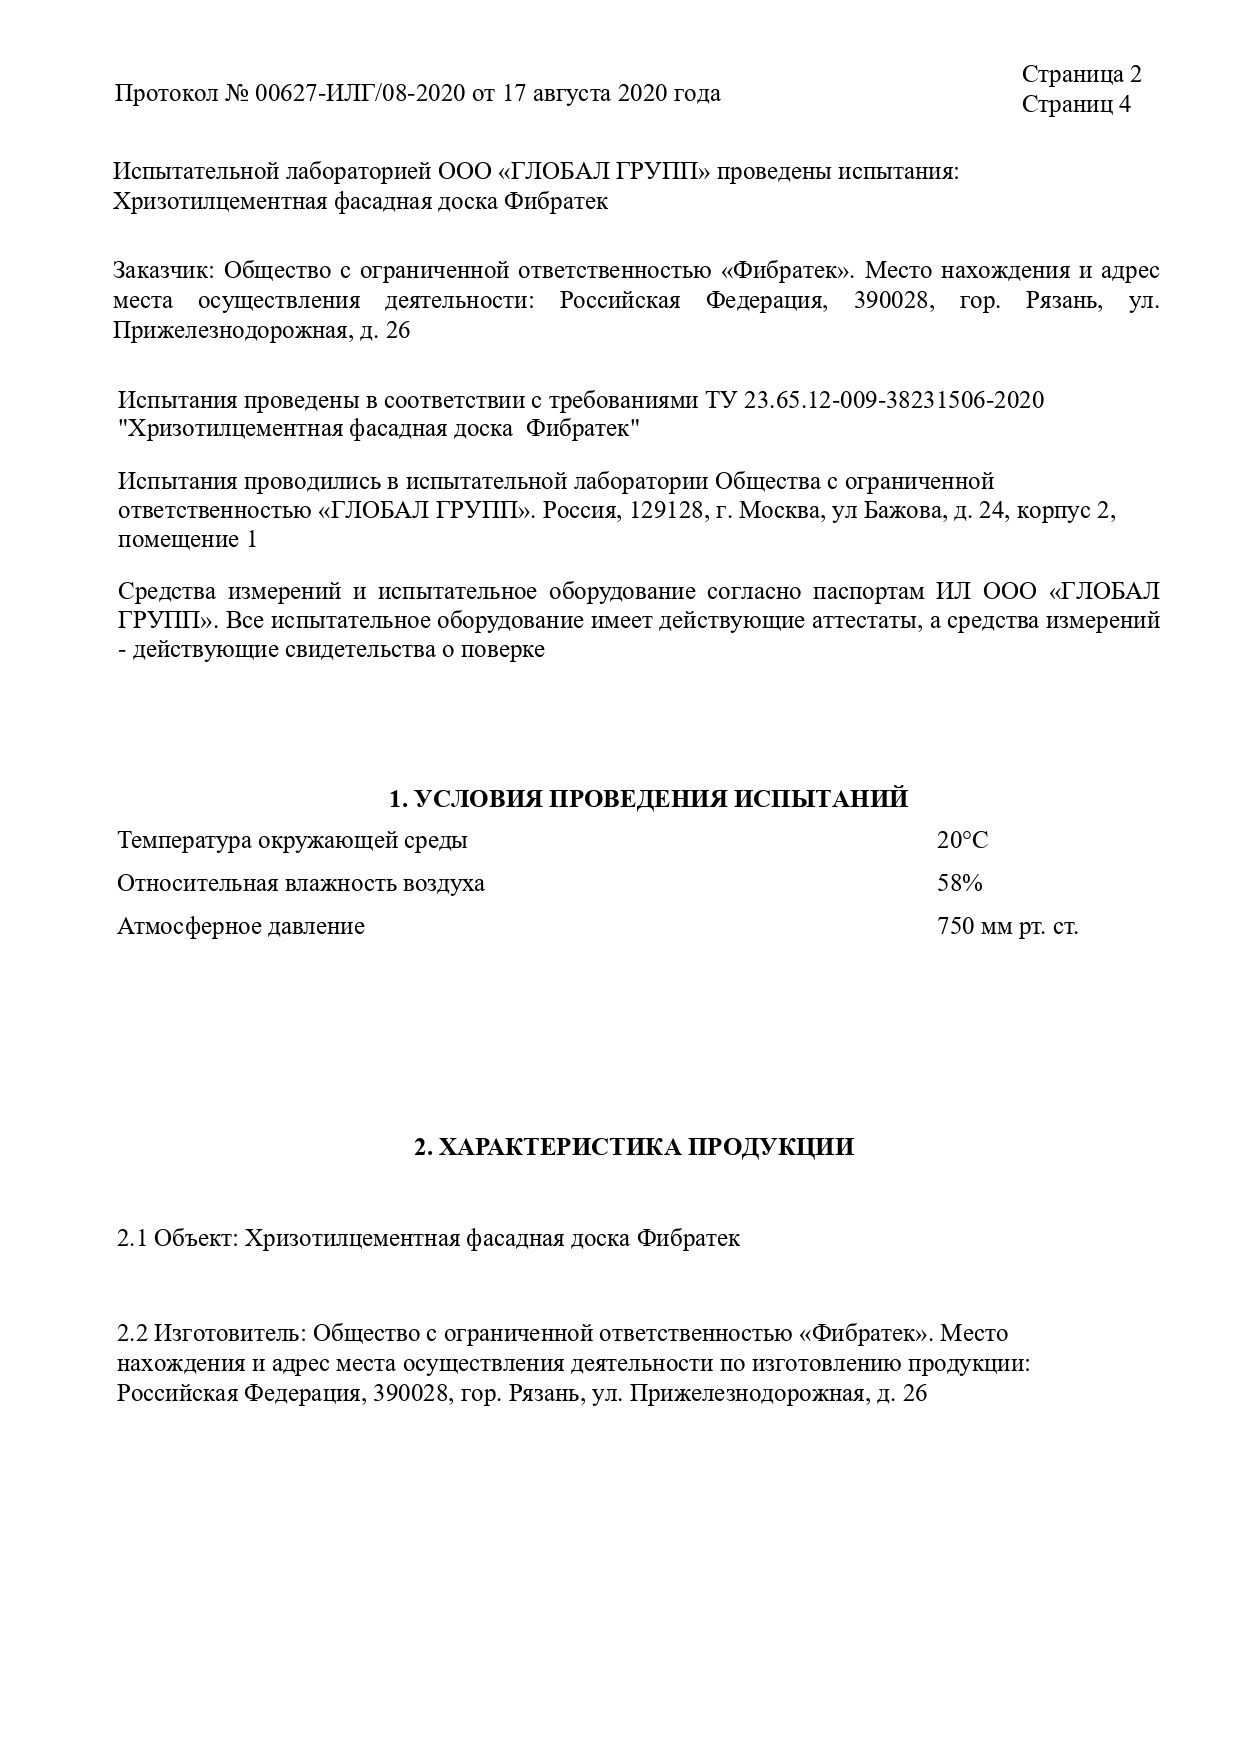 Протокол испытаний Хризотилцементной фасадной доски Фибратек  лист 2